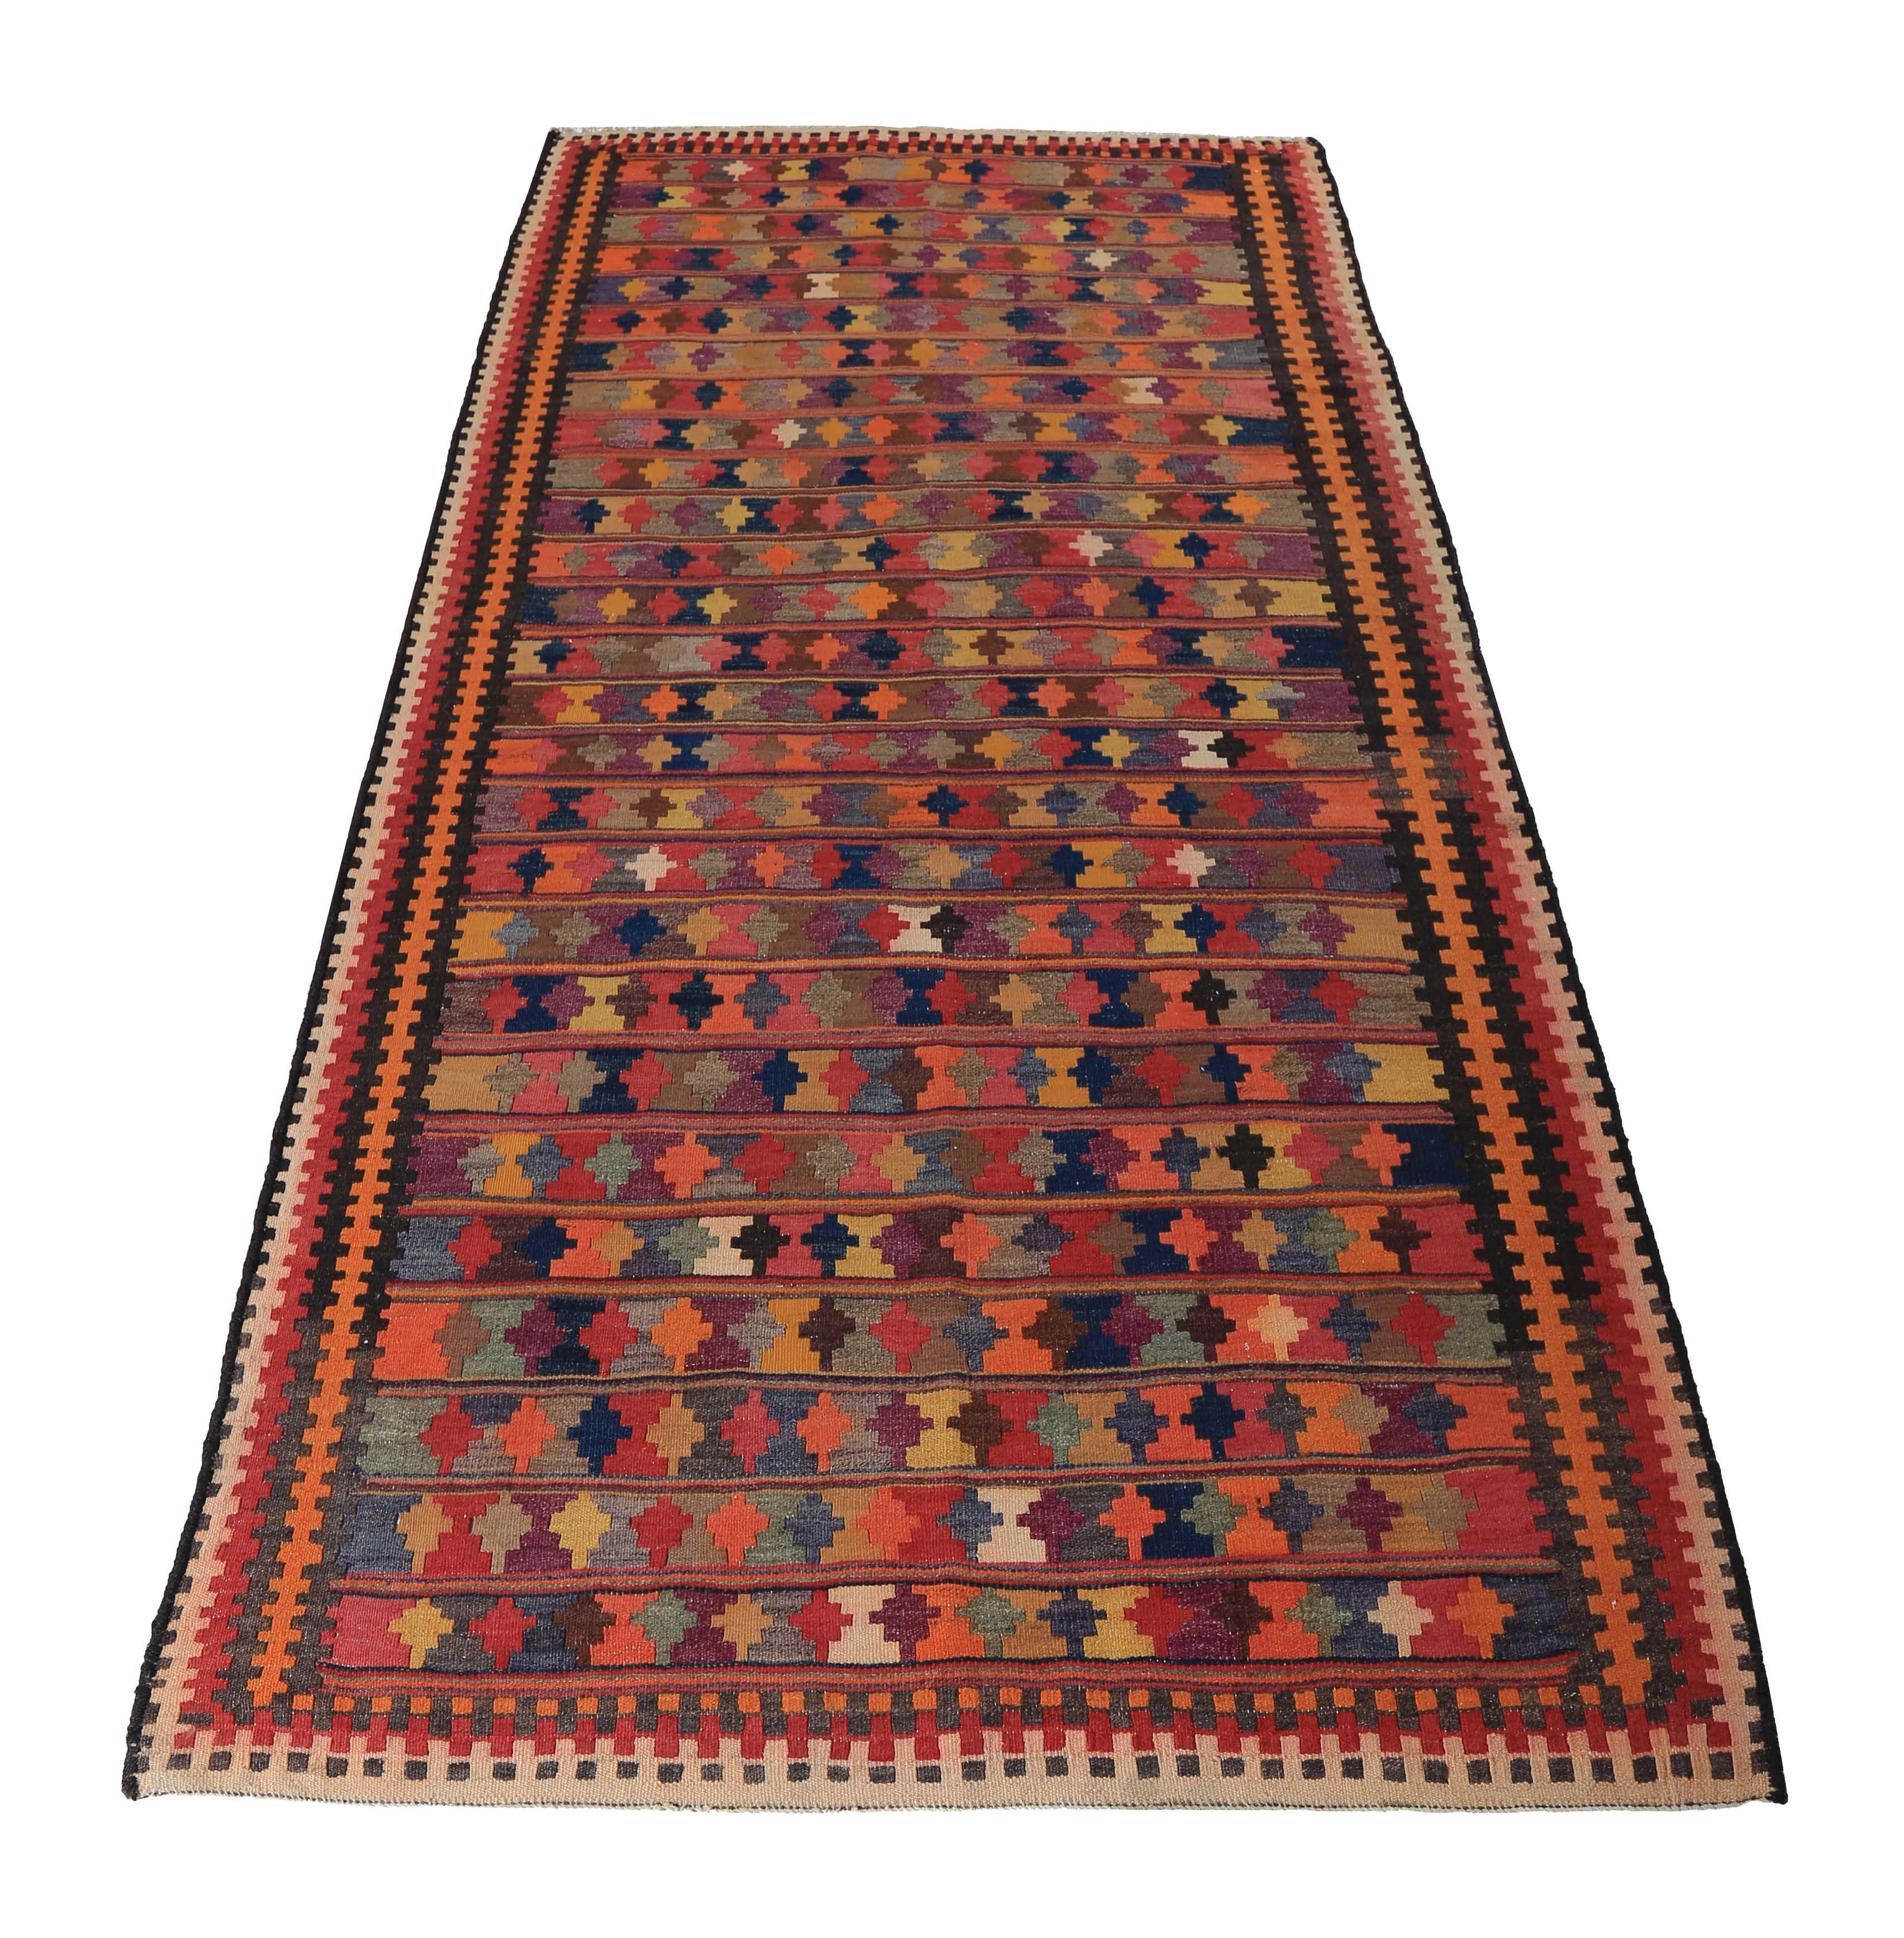 Türkischer Teppich, handgewebt aus feinster Schafwolle und gefärbt mit natürlichen pflanzlichen Farbstoffen, die für Menschen und Haustiere sicher sind. Es handelt sich um ein traditionelles Kelim-Flachgewebemuster mit einer bunten Mischung aus